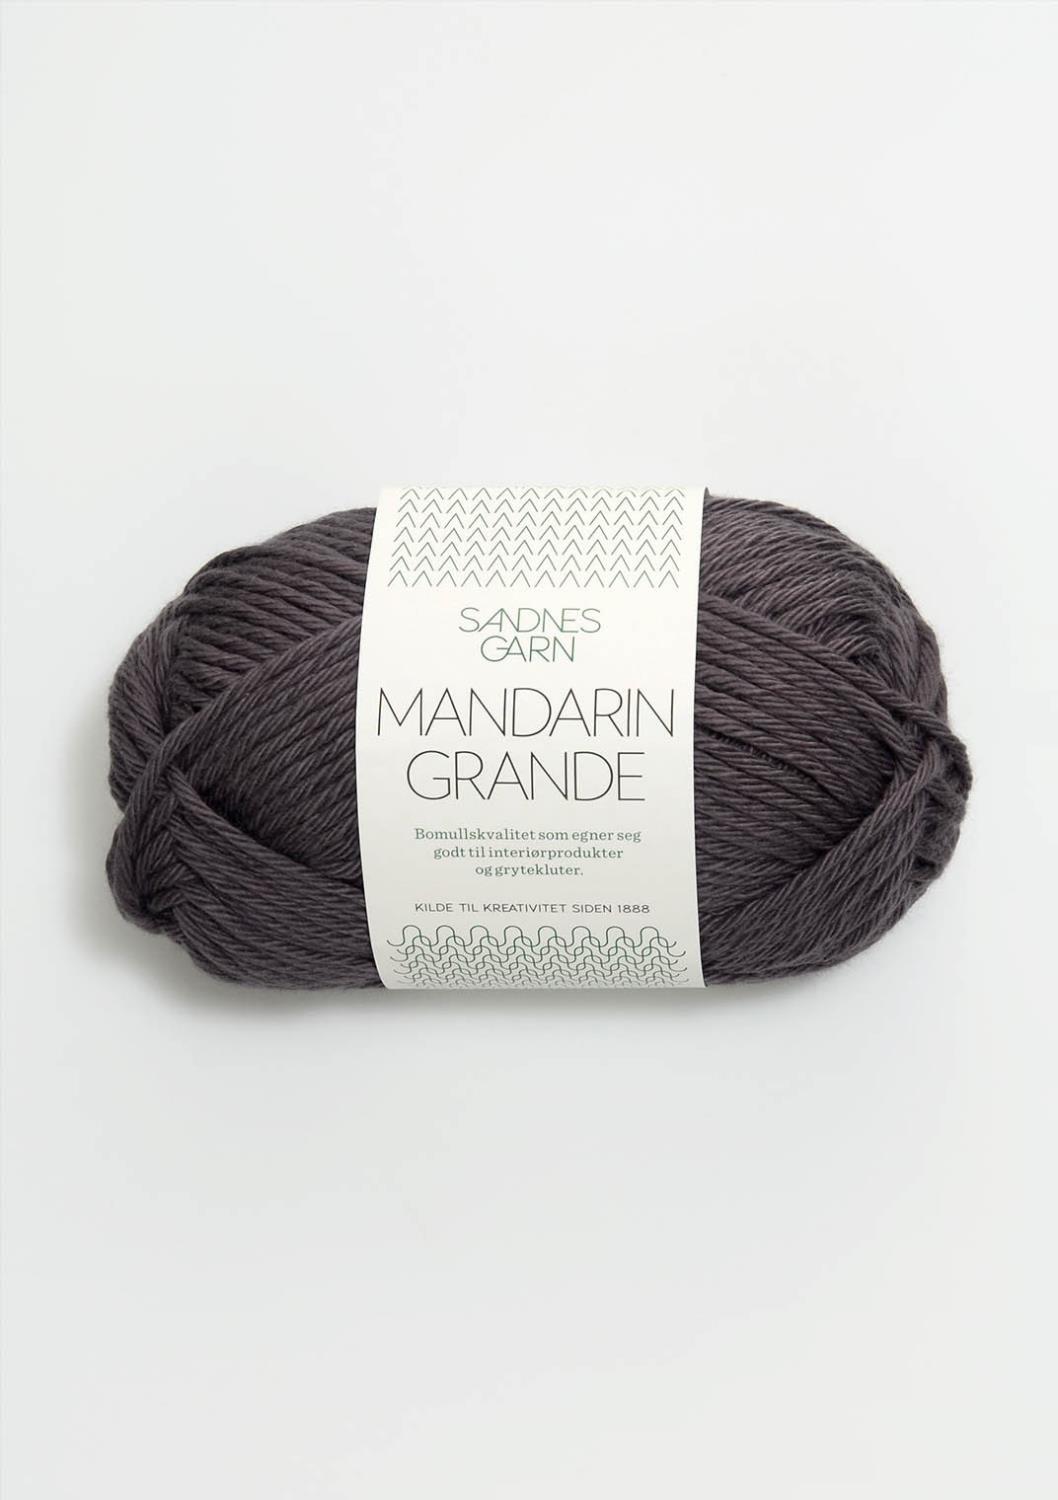 Mandarin Grande Sandnes 5870 - Mørk Grå